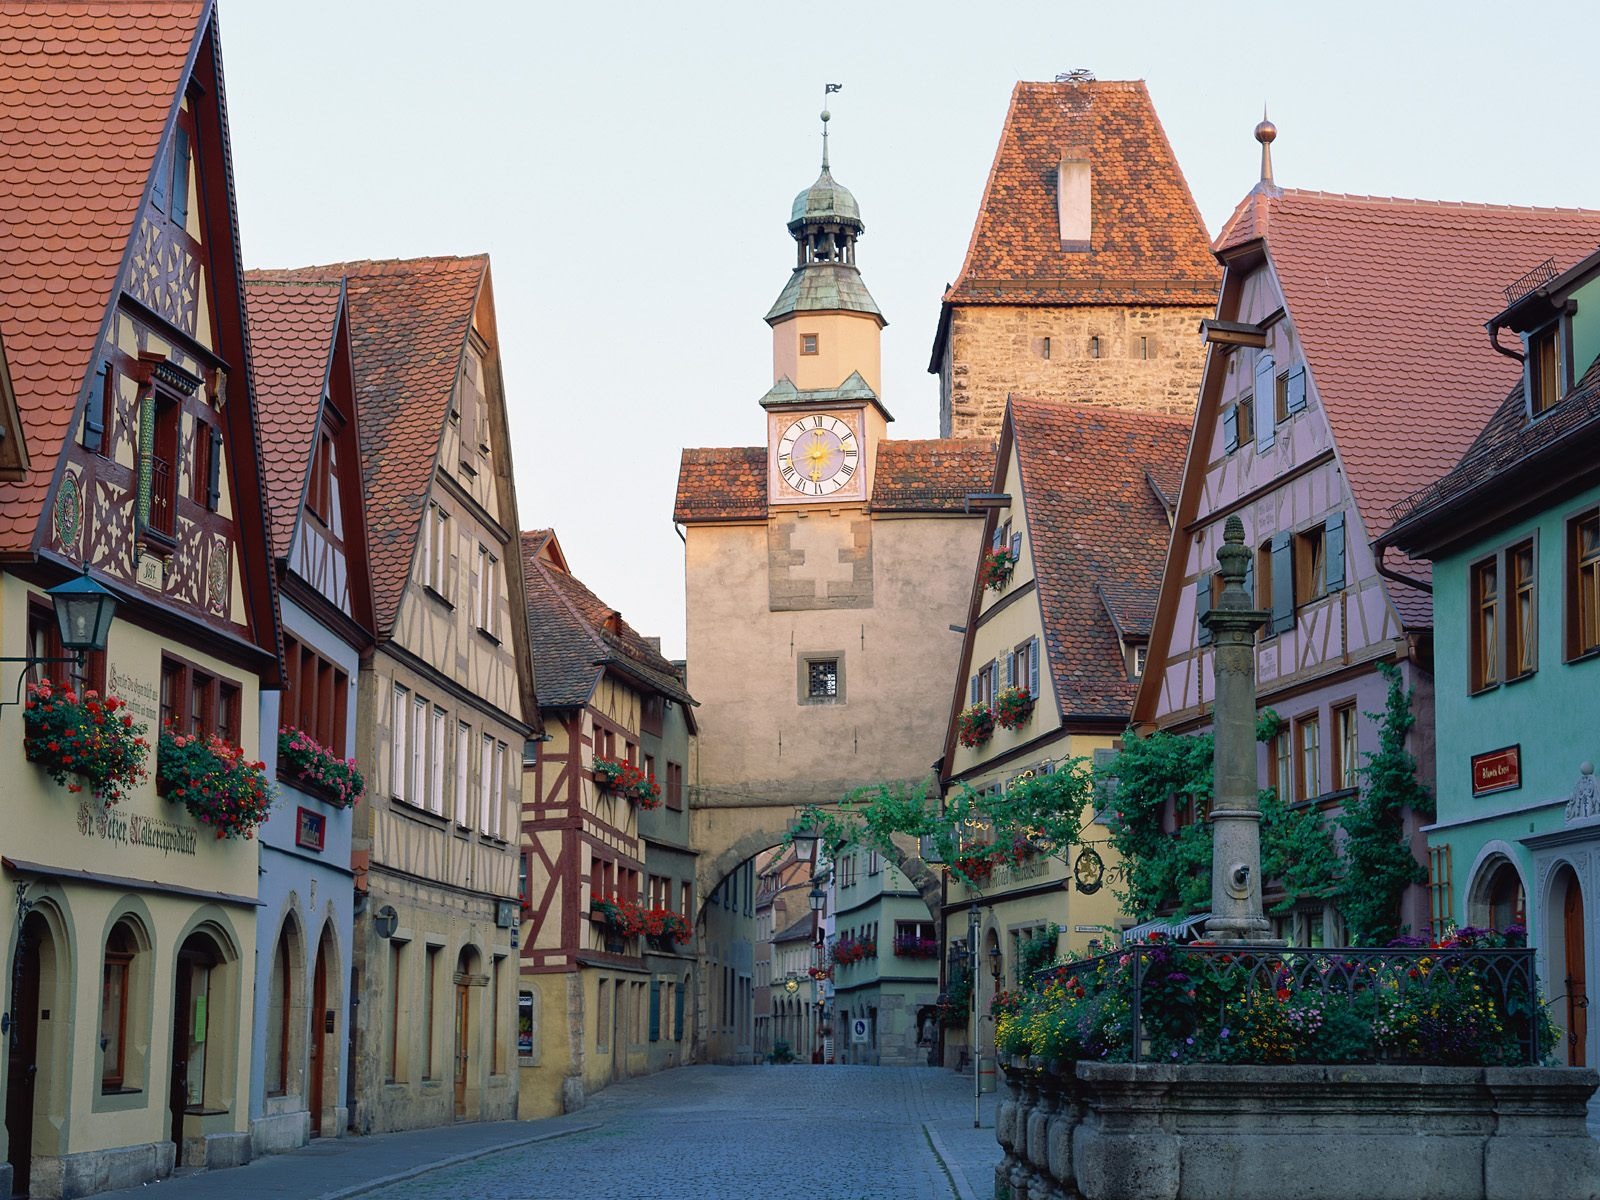 deutschland tapete,stadt, dorf,mittelalterliche architektur,gebäude,gegend